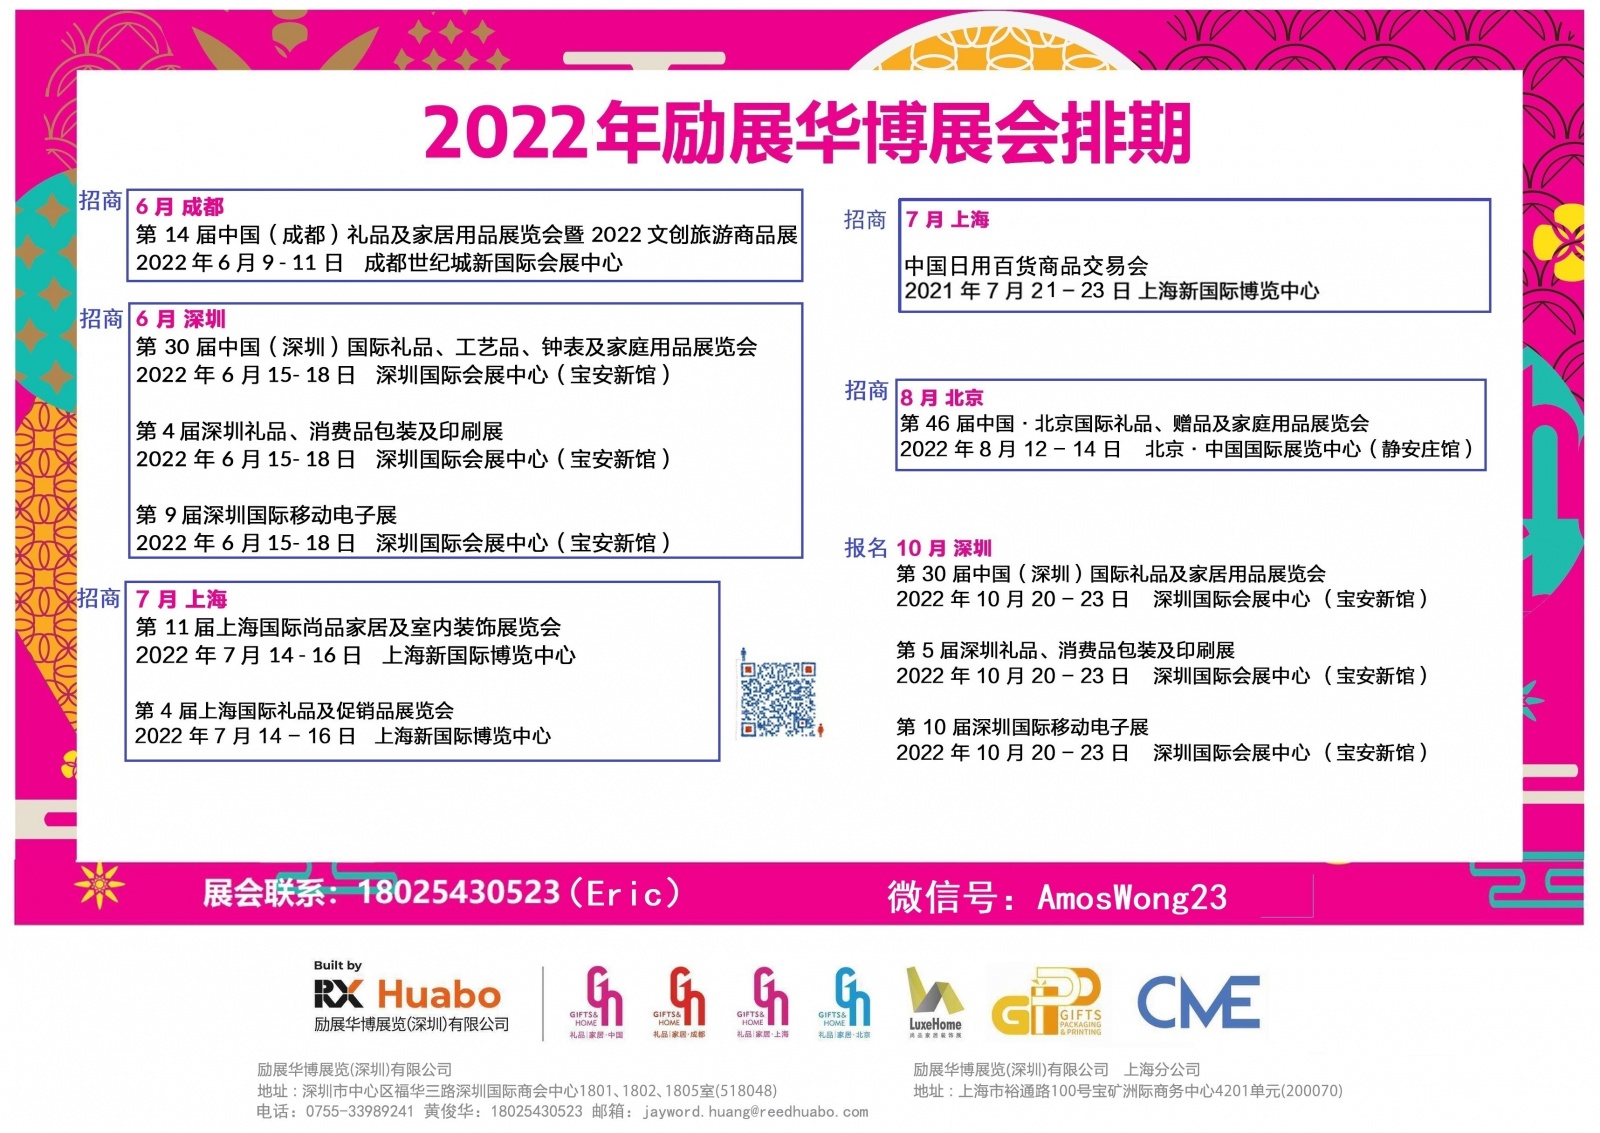 2022深圳移动电子展开始招商了，同期深圳礼品展